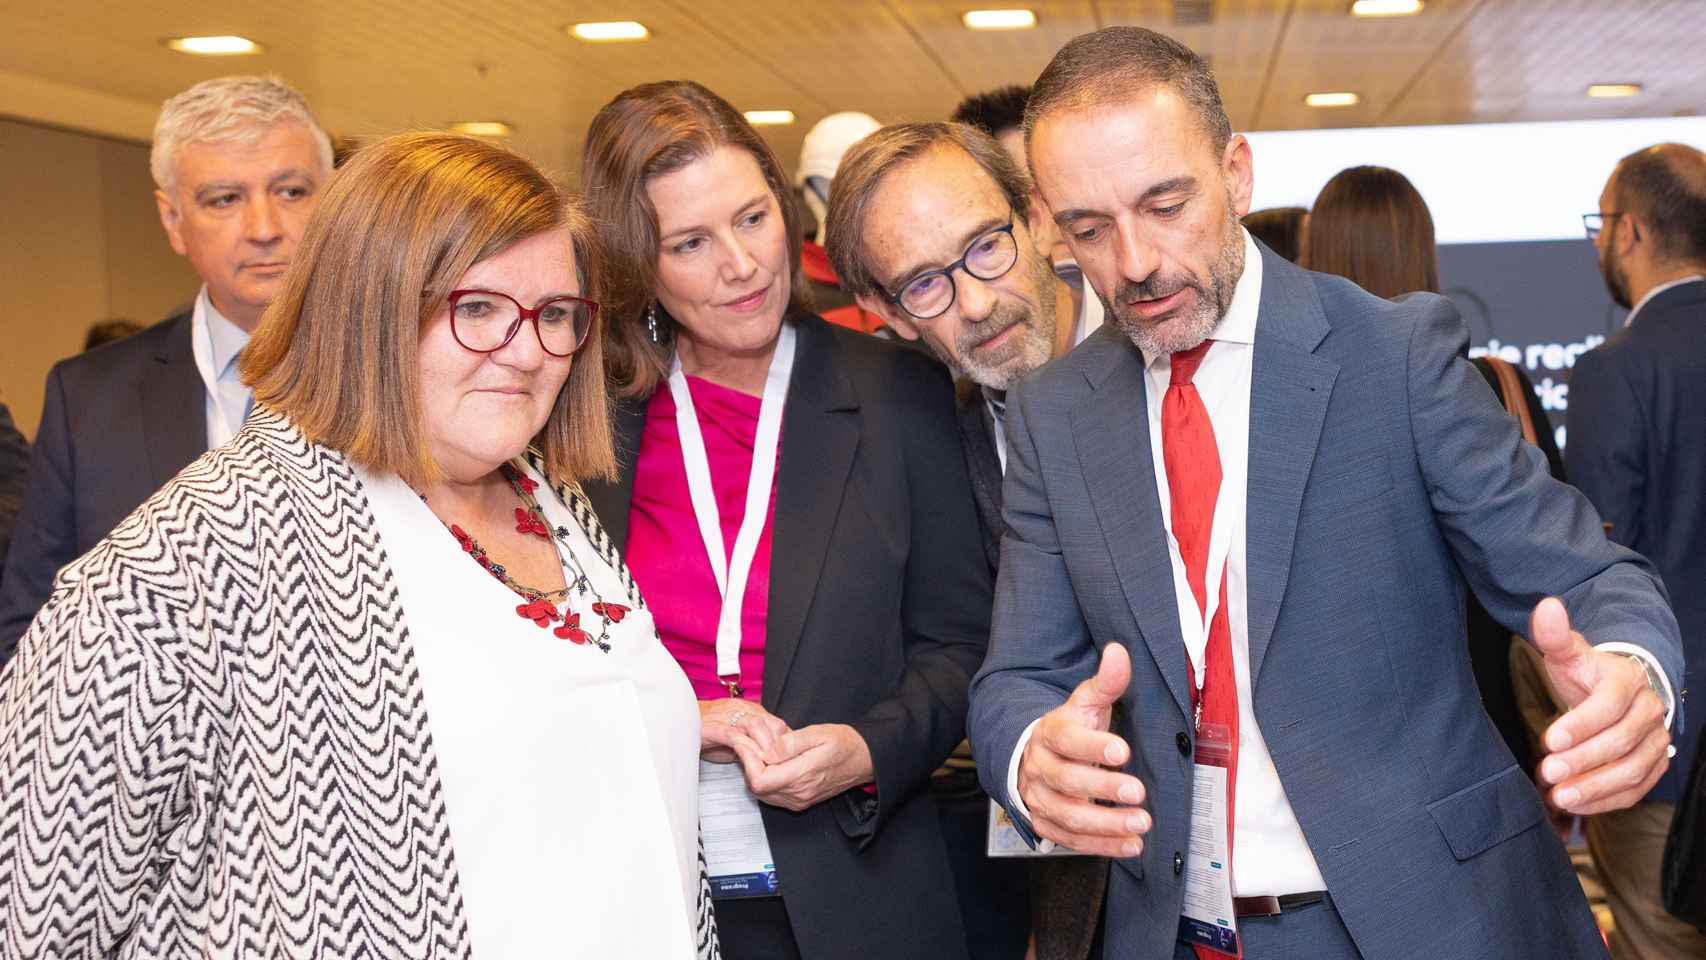 La secretaria general de Innovación, Teresa Riesgo, y la presidenta de Fedit, Laura Olcina, durante su recorrido por la zona de exposición de Meetech Spain.